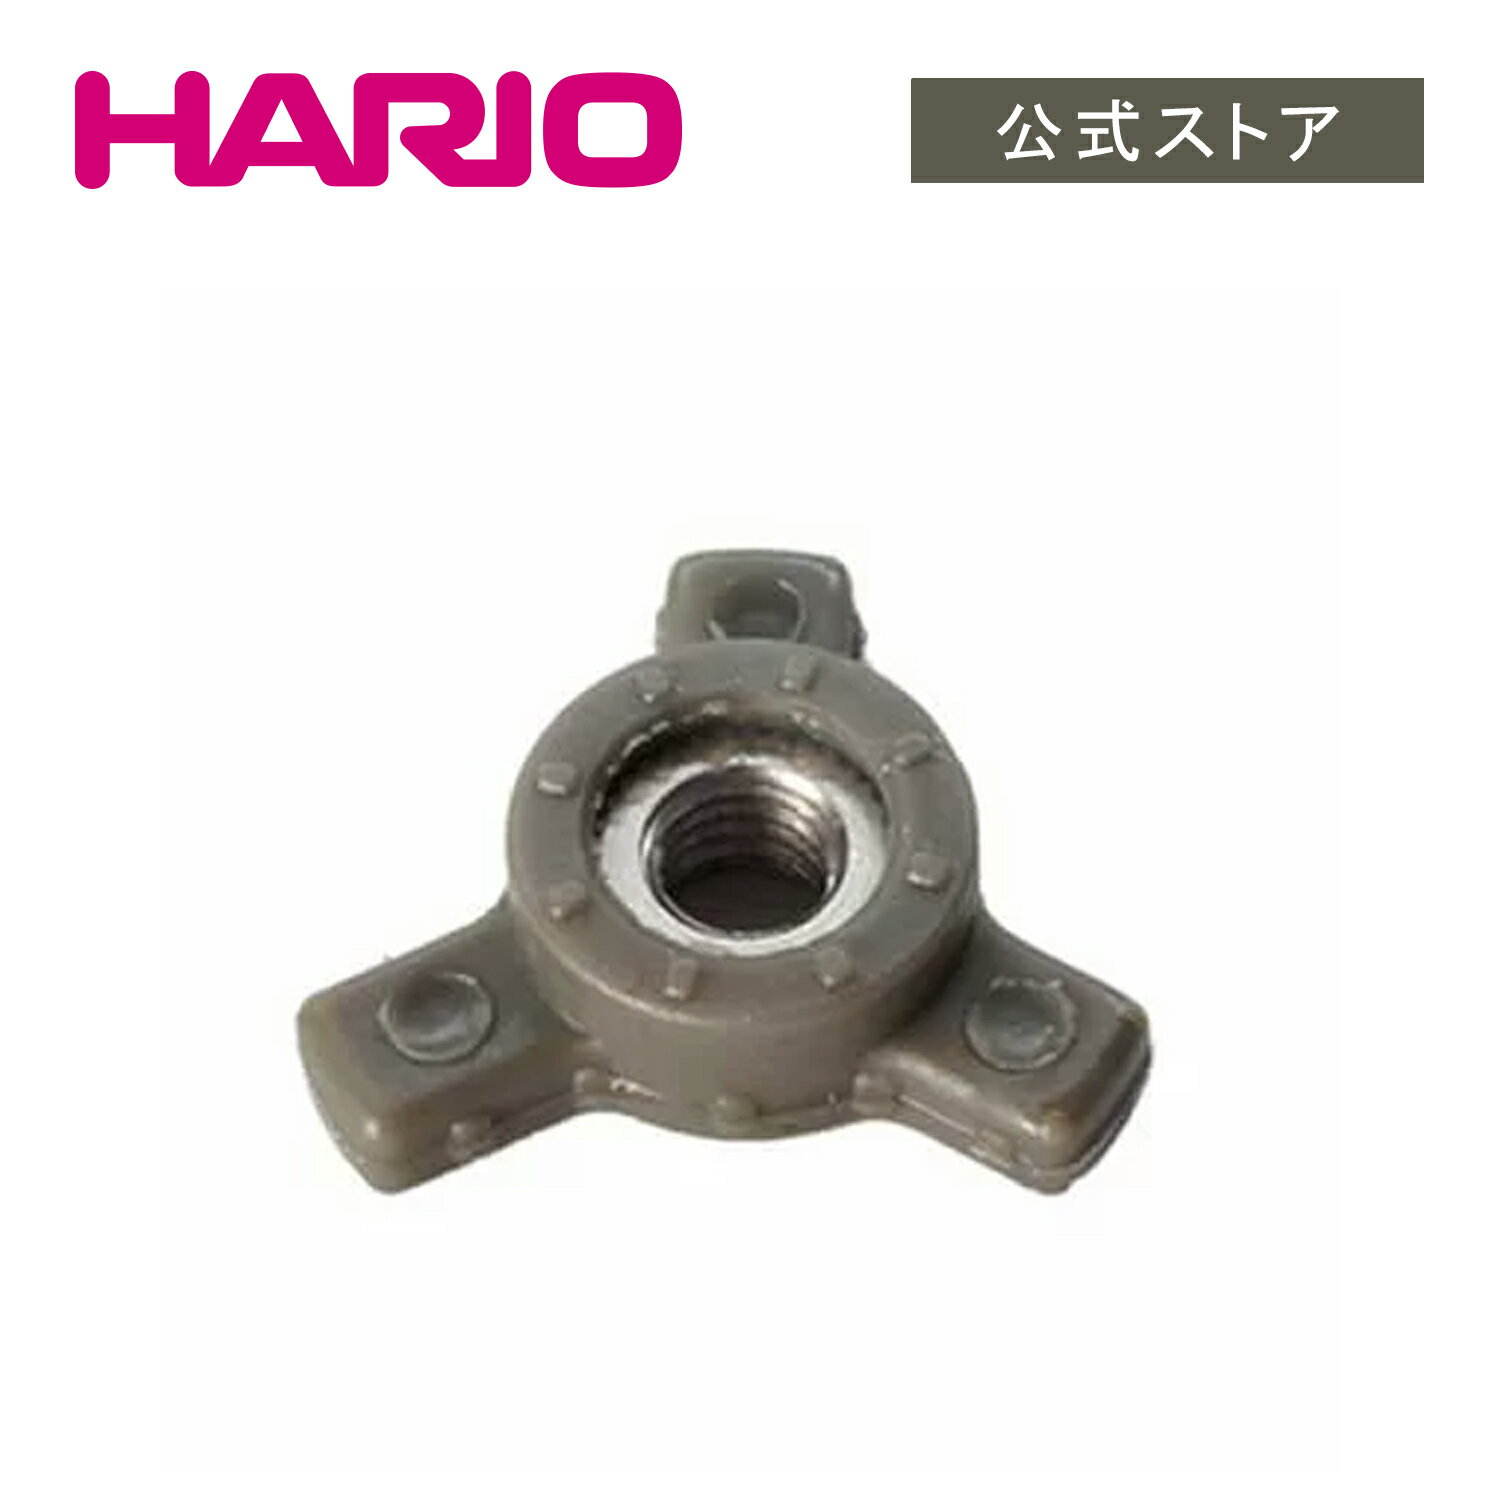 【公式ショップ】HARIO MSS粗さ調節ツマミの商品画像